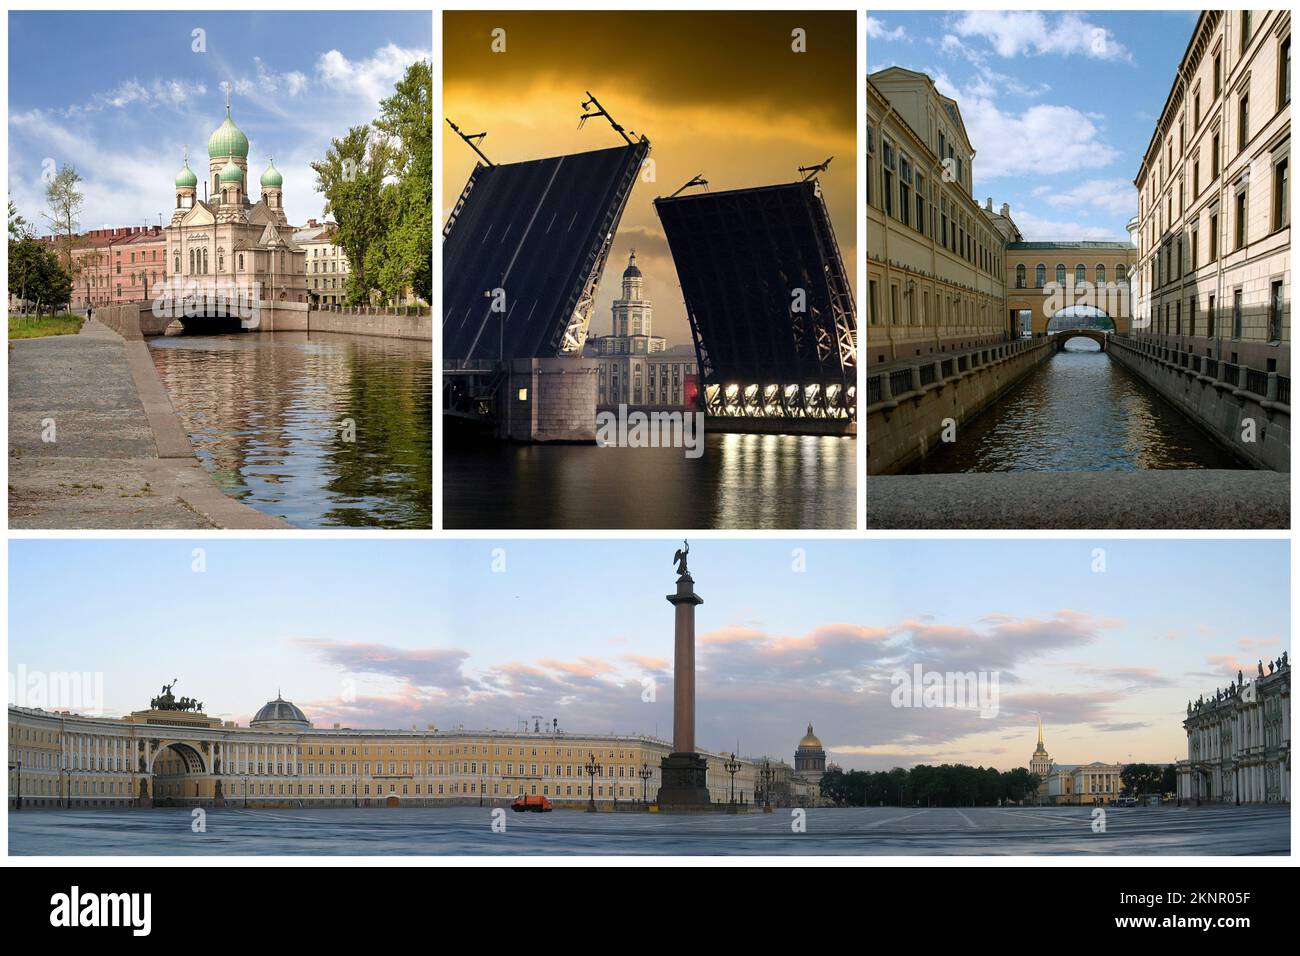 St. Pétersbourg est le port le plus important de Russie. Il a été fondé par le tsar Pierre le Grand et fut la capitale de l'Empire russe jusqu'en 1918 (1) Banque D'Images